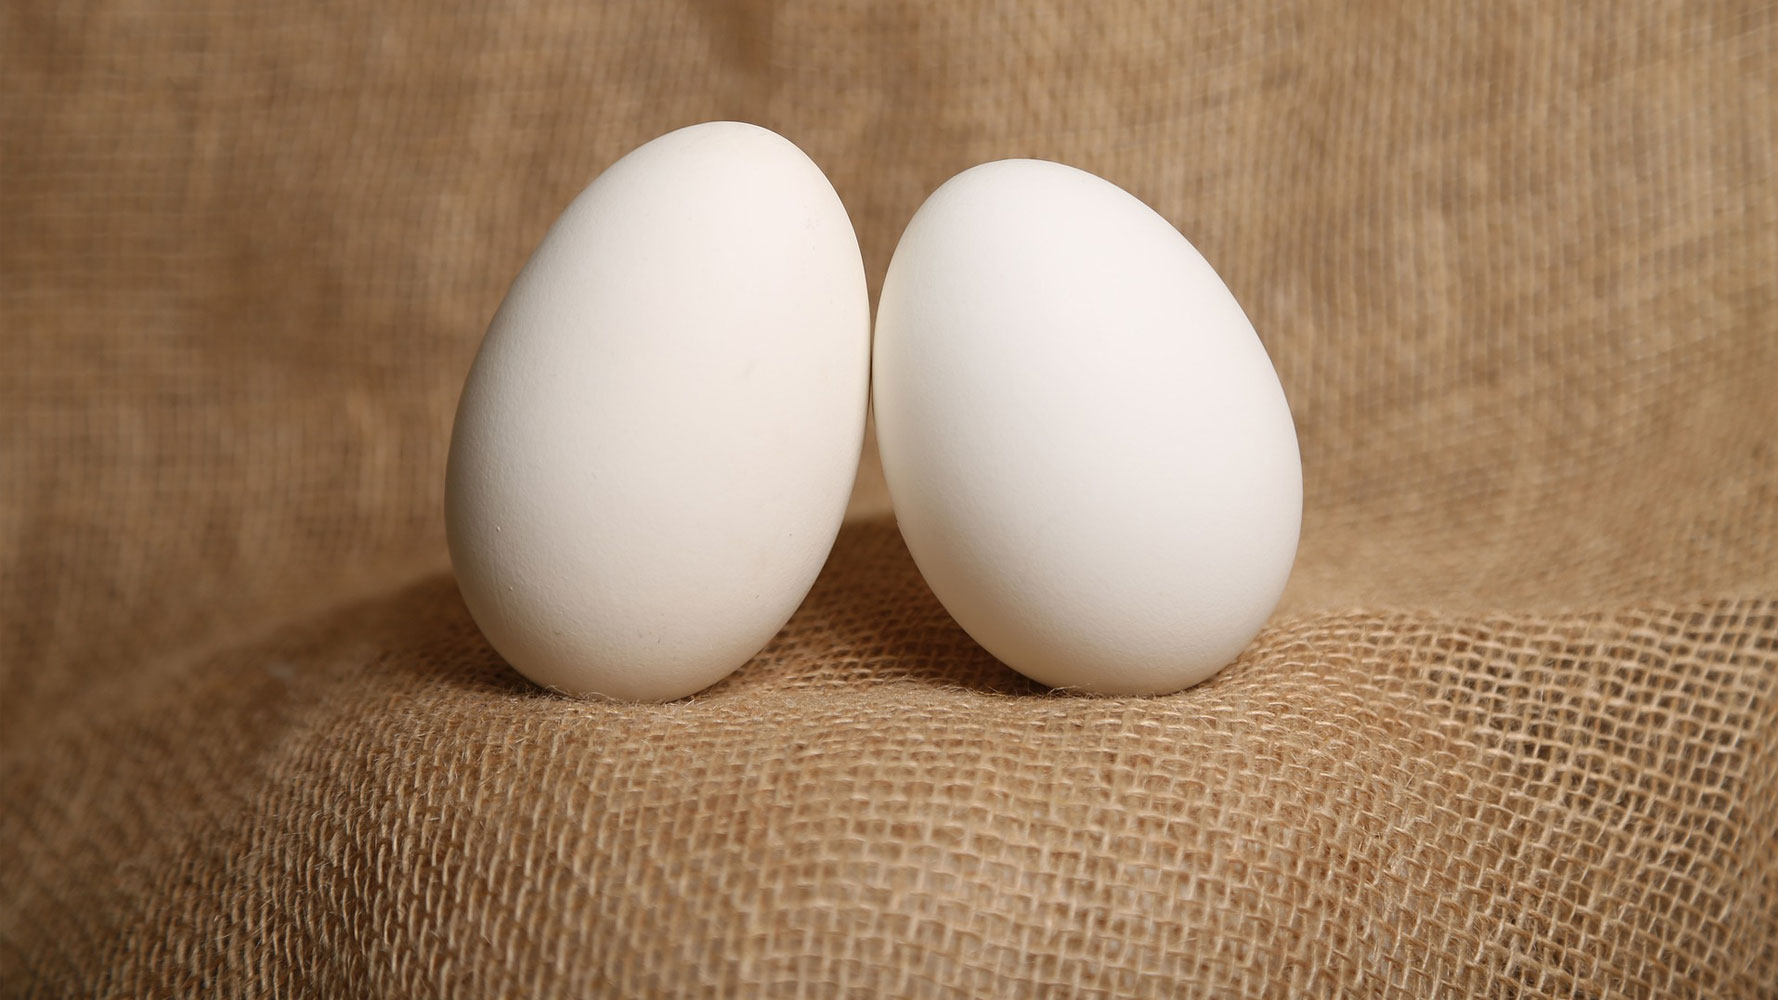 Ördek yumurtası sayfası, Ördek yumurtası resmi